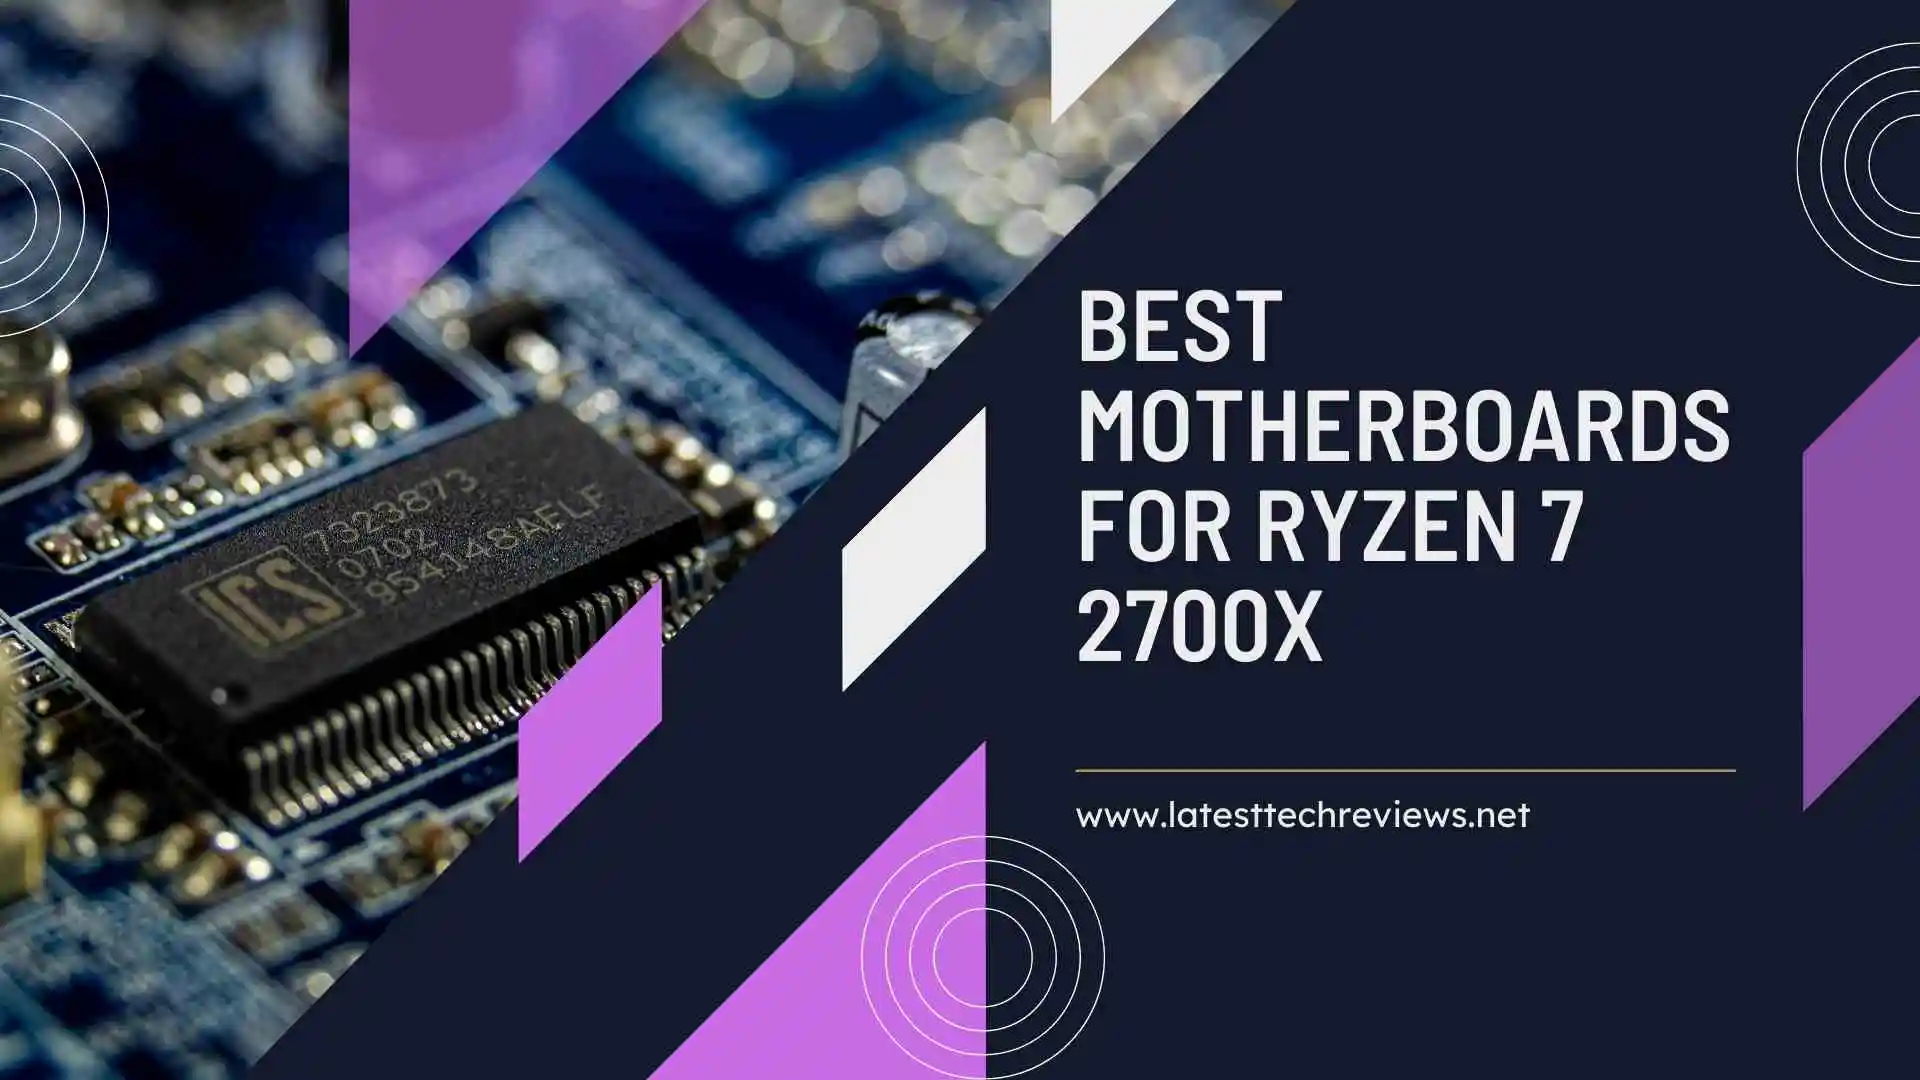 Best Motherboards for Ryzen 7 2700X in 2022